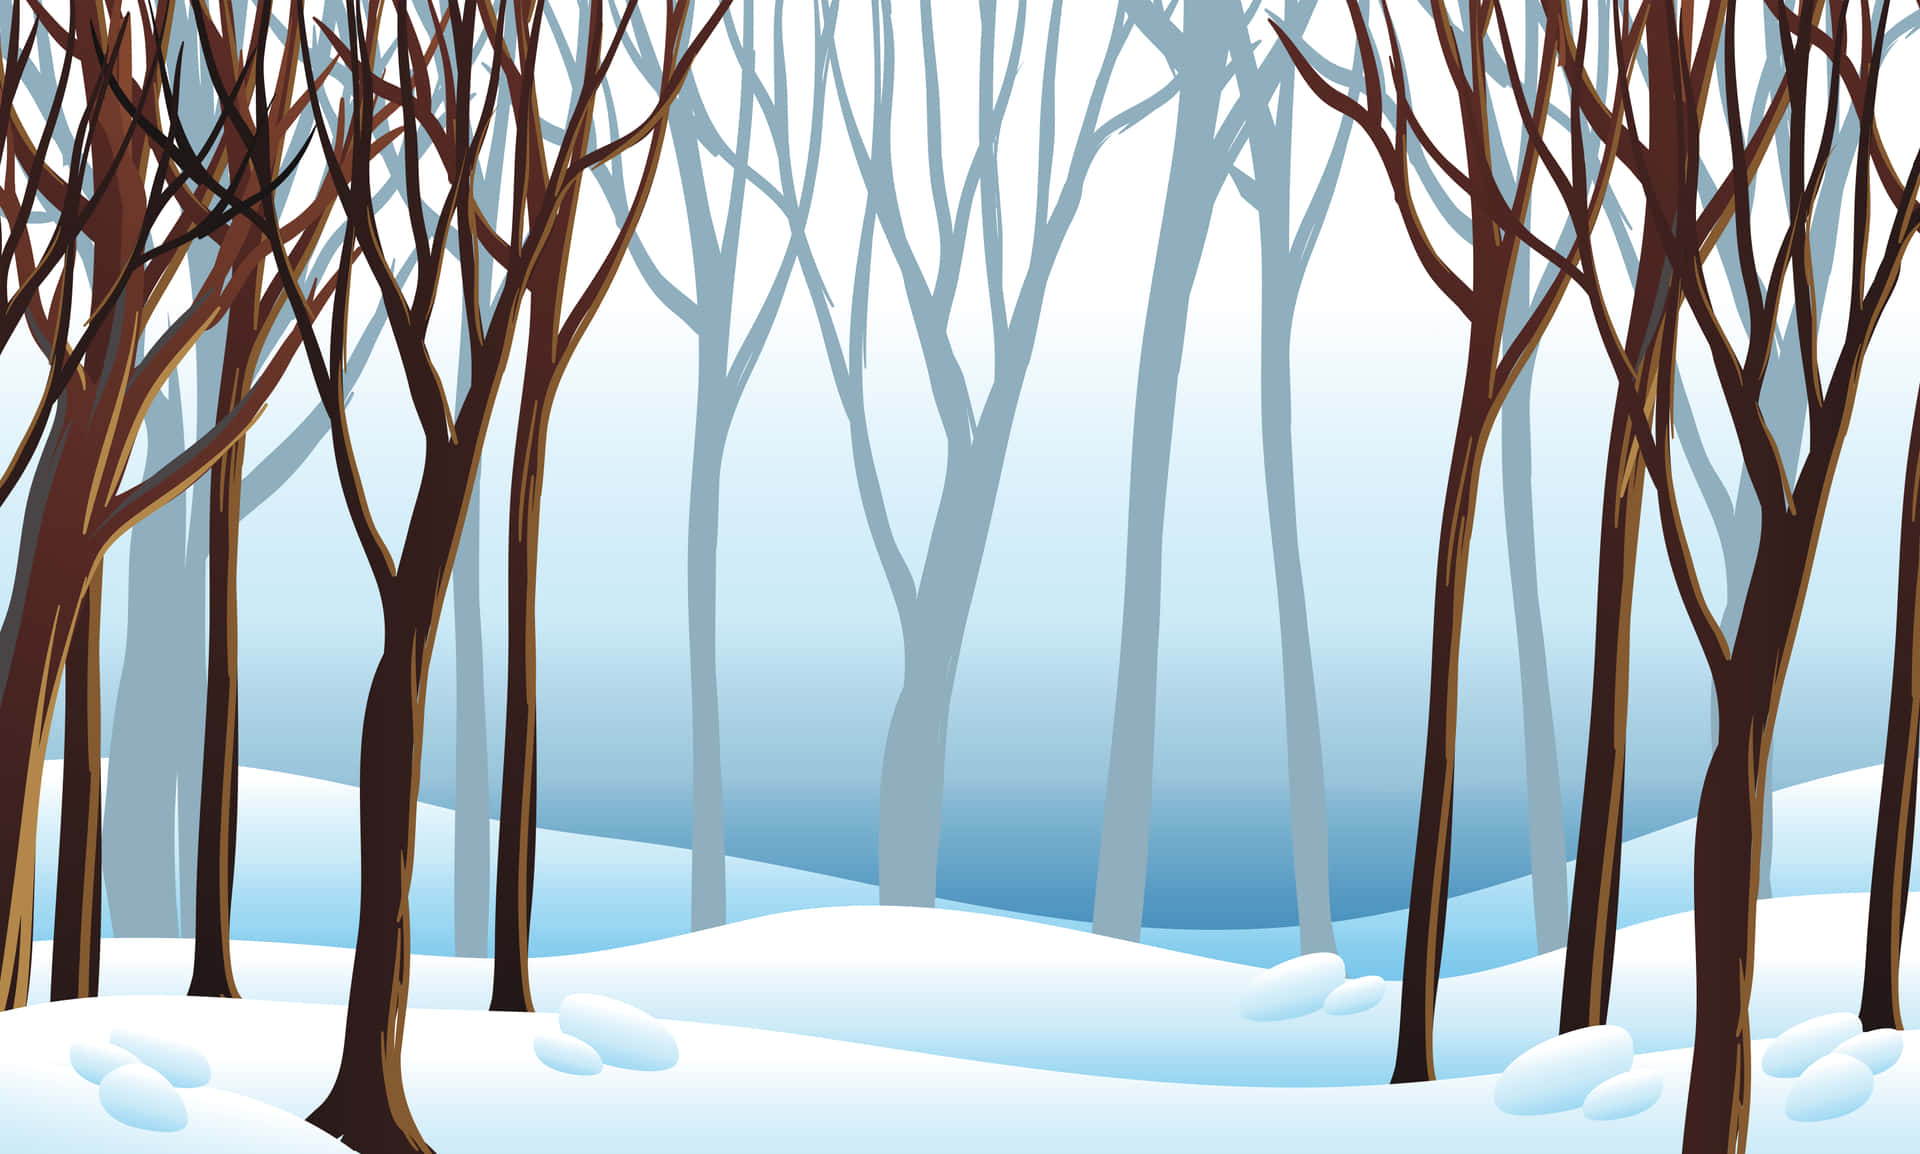 Disfrutade Un Tranquilo Bosque Invernal Con Árboles Cubiertos De Nieve.